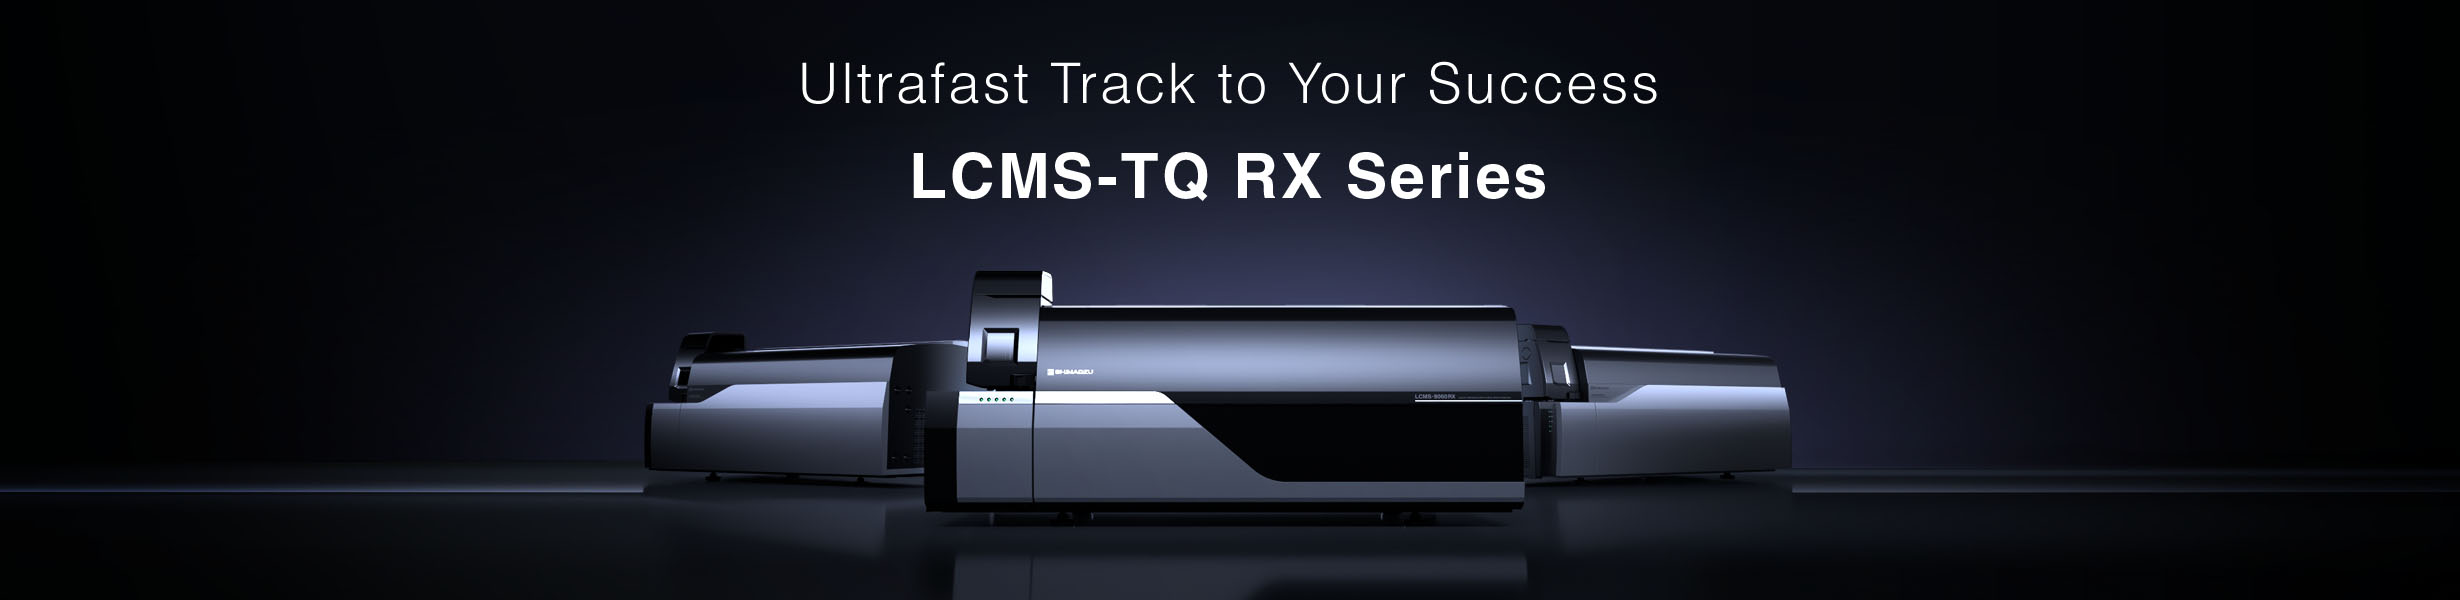 LCMS-TQ RX Series